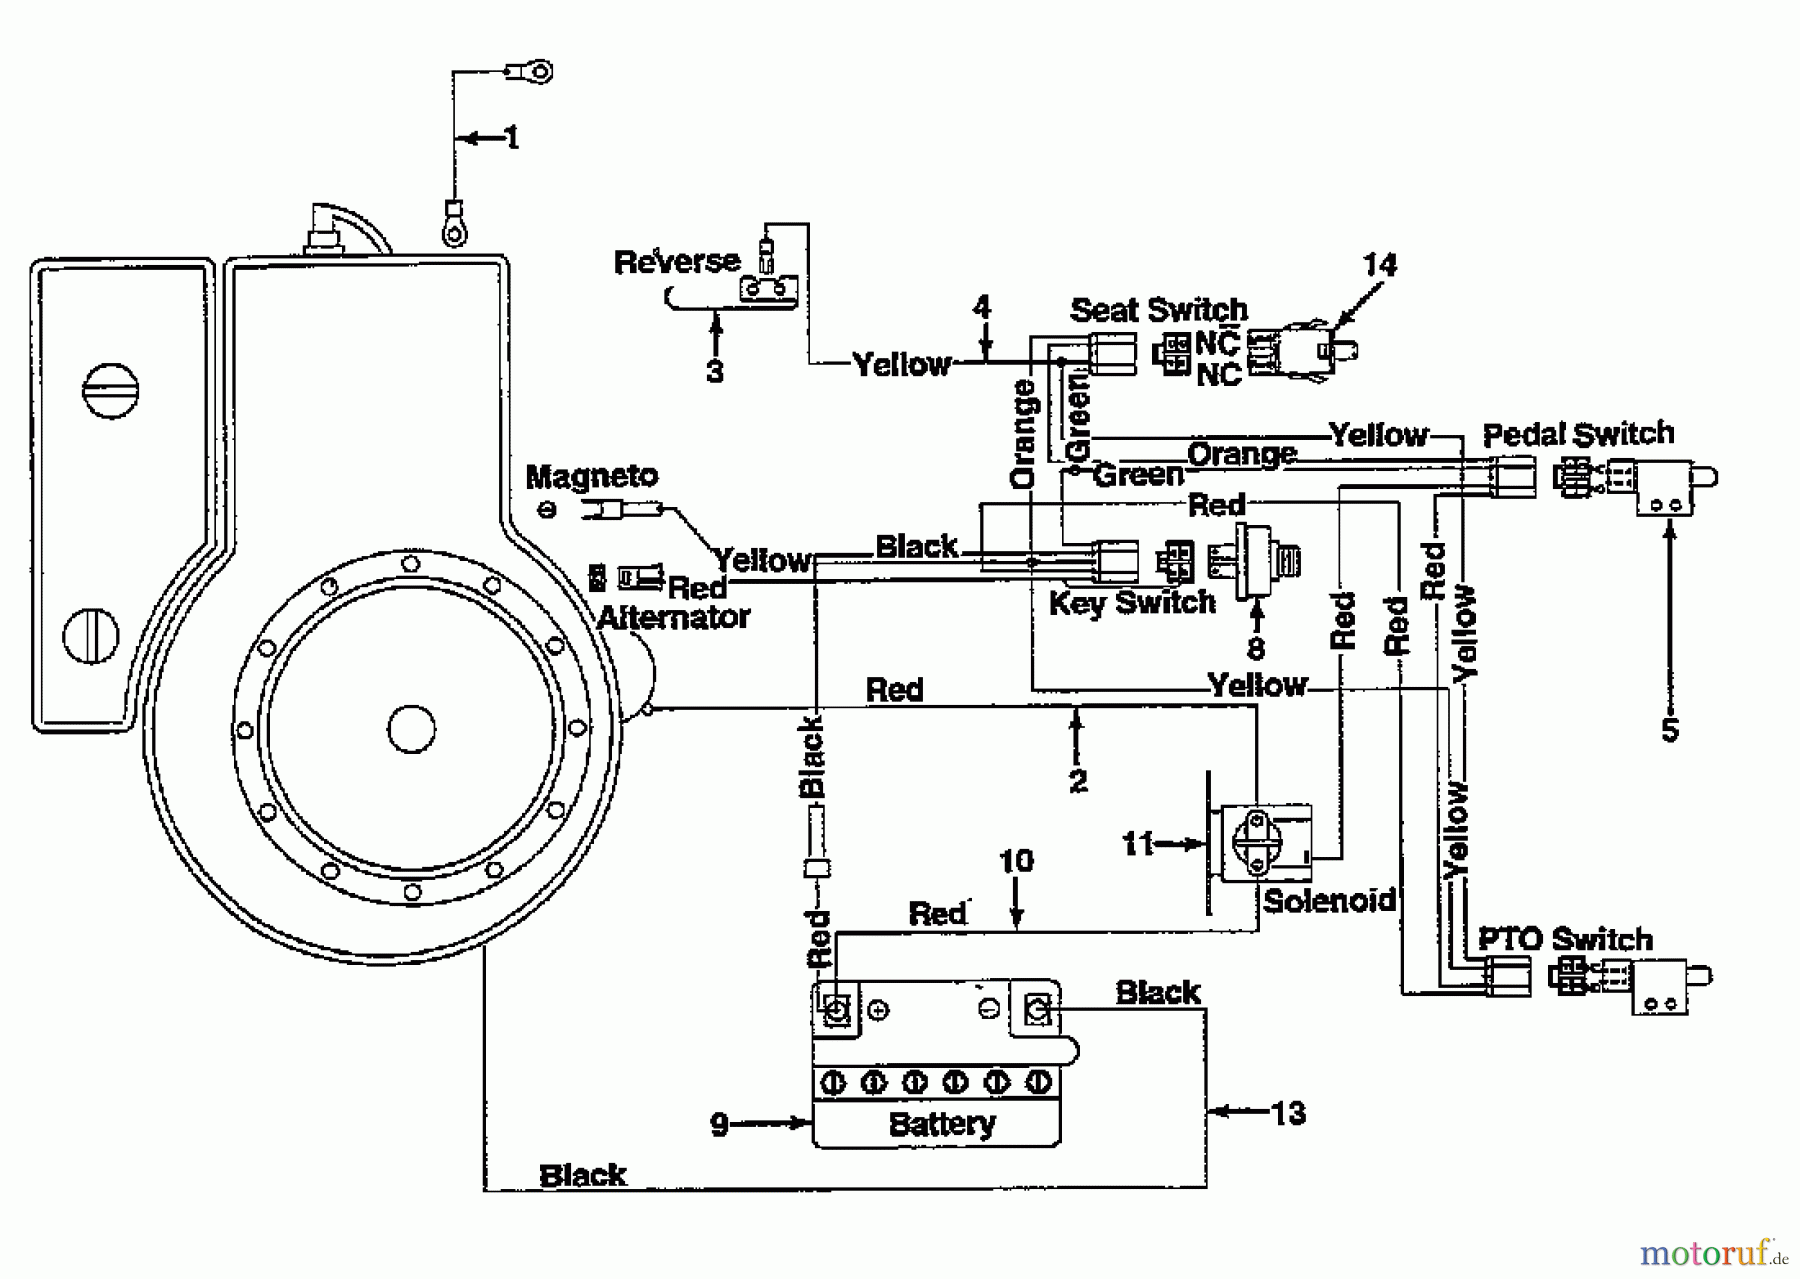  Gardol Rasentraktoren R 10 132-521C646  (1992) Schaltplan